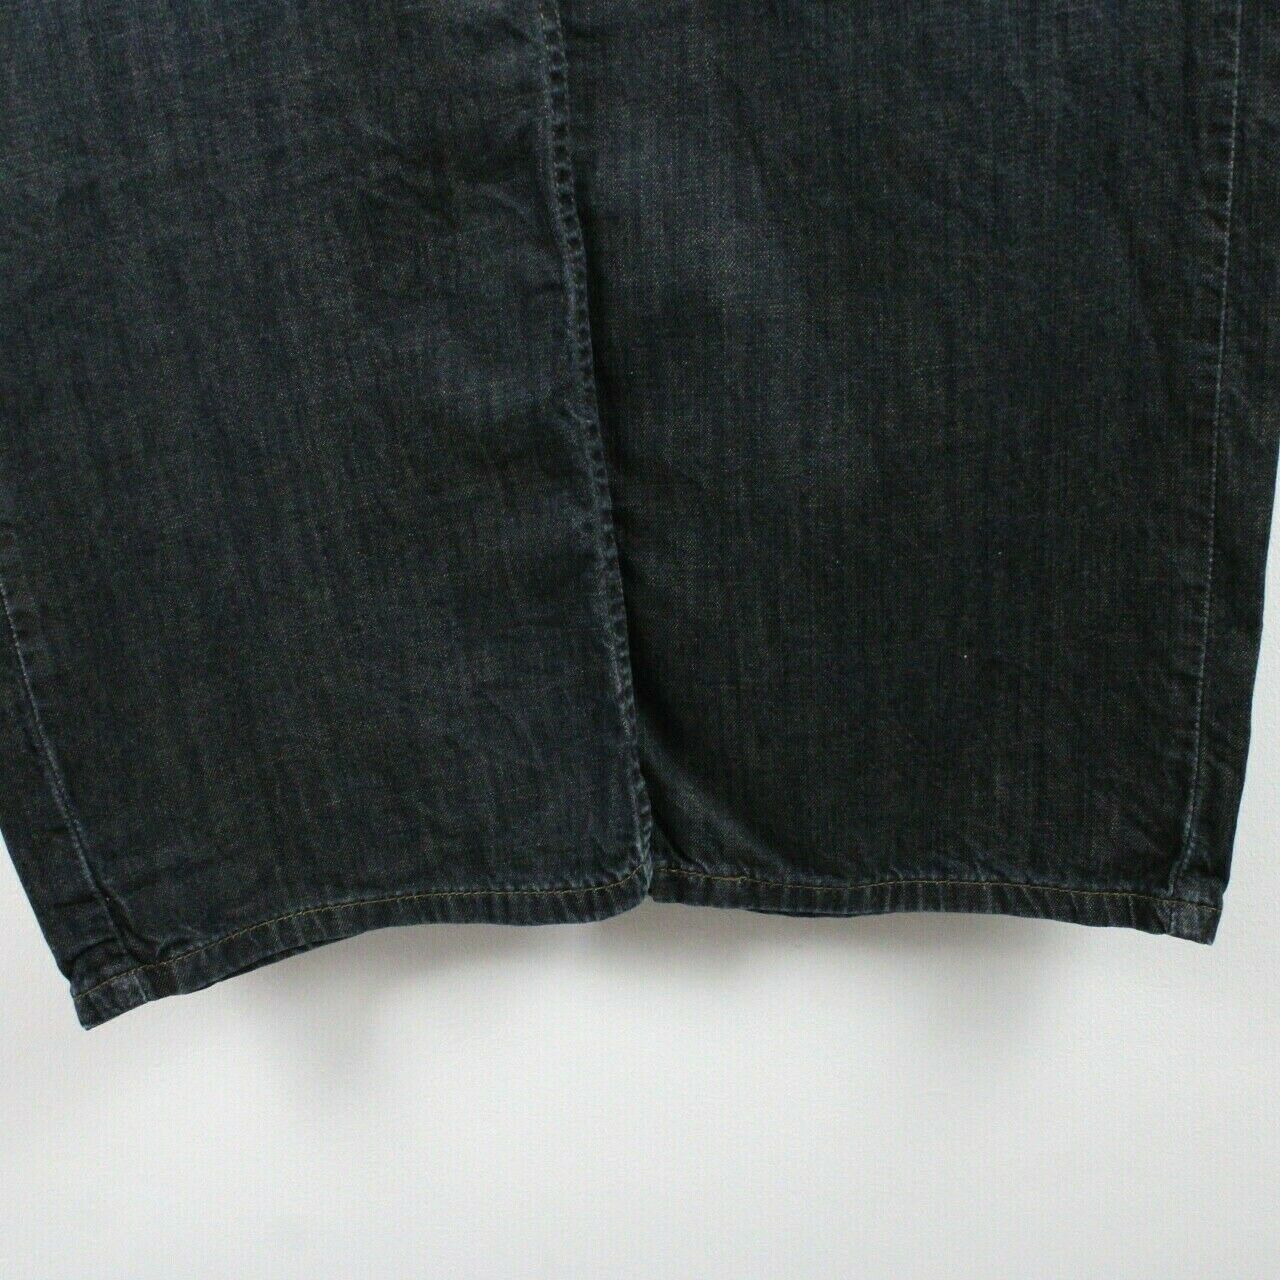 LEVIS 569 Jeans Dark Blue | W38 L30